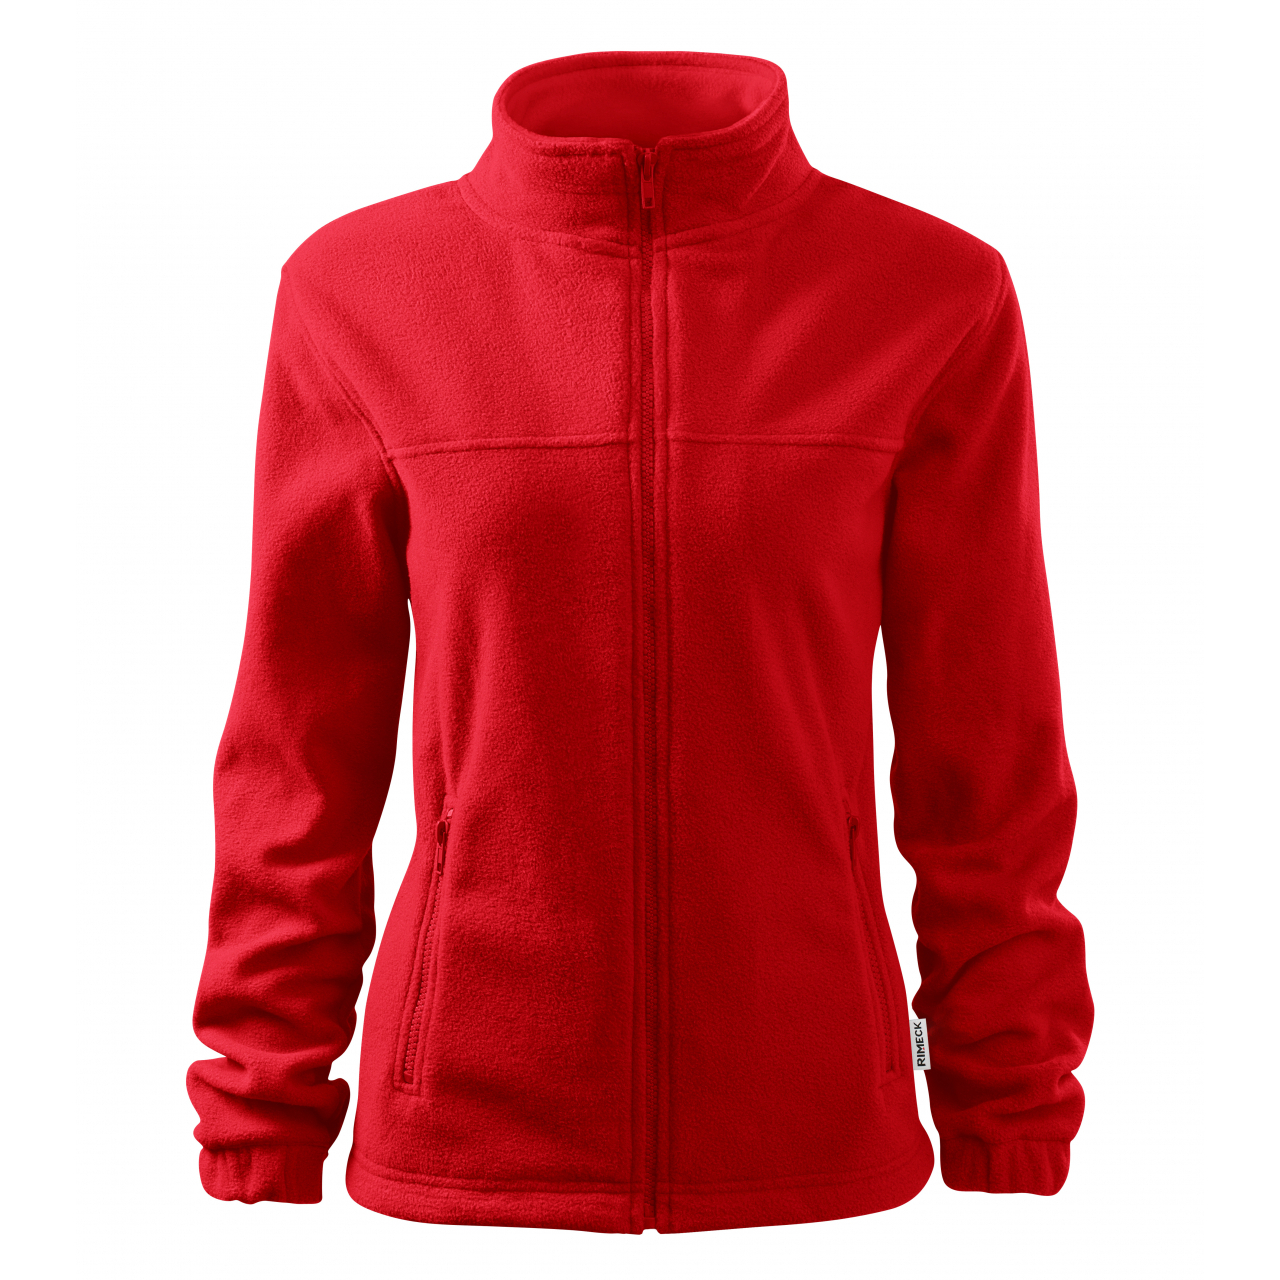 Mikina dámská fleecová Rimeck Jacket 504 - červená, XL